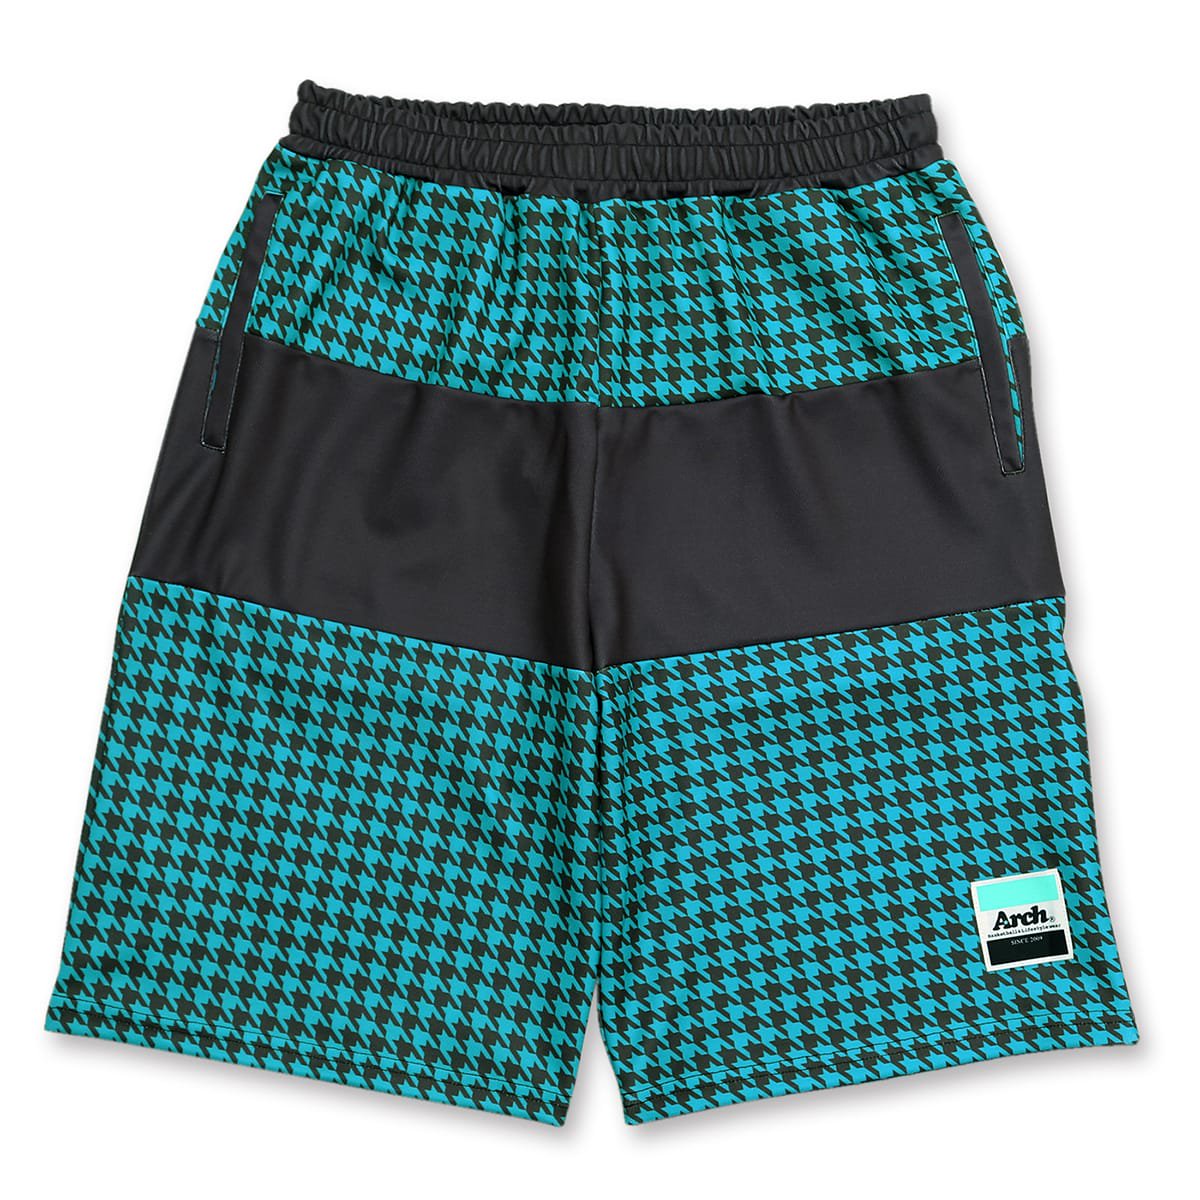 CDR paneled shorts【gray/turquoise】